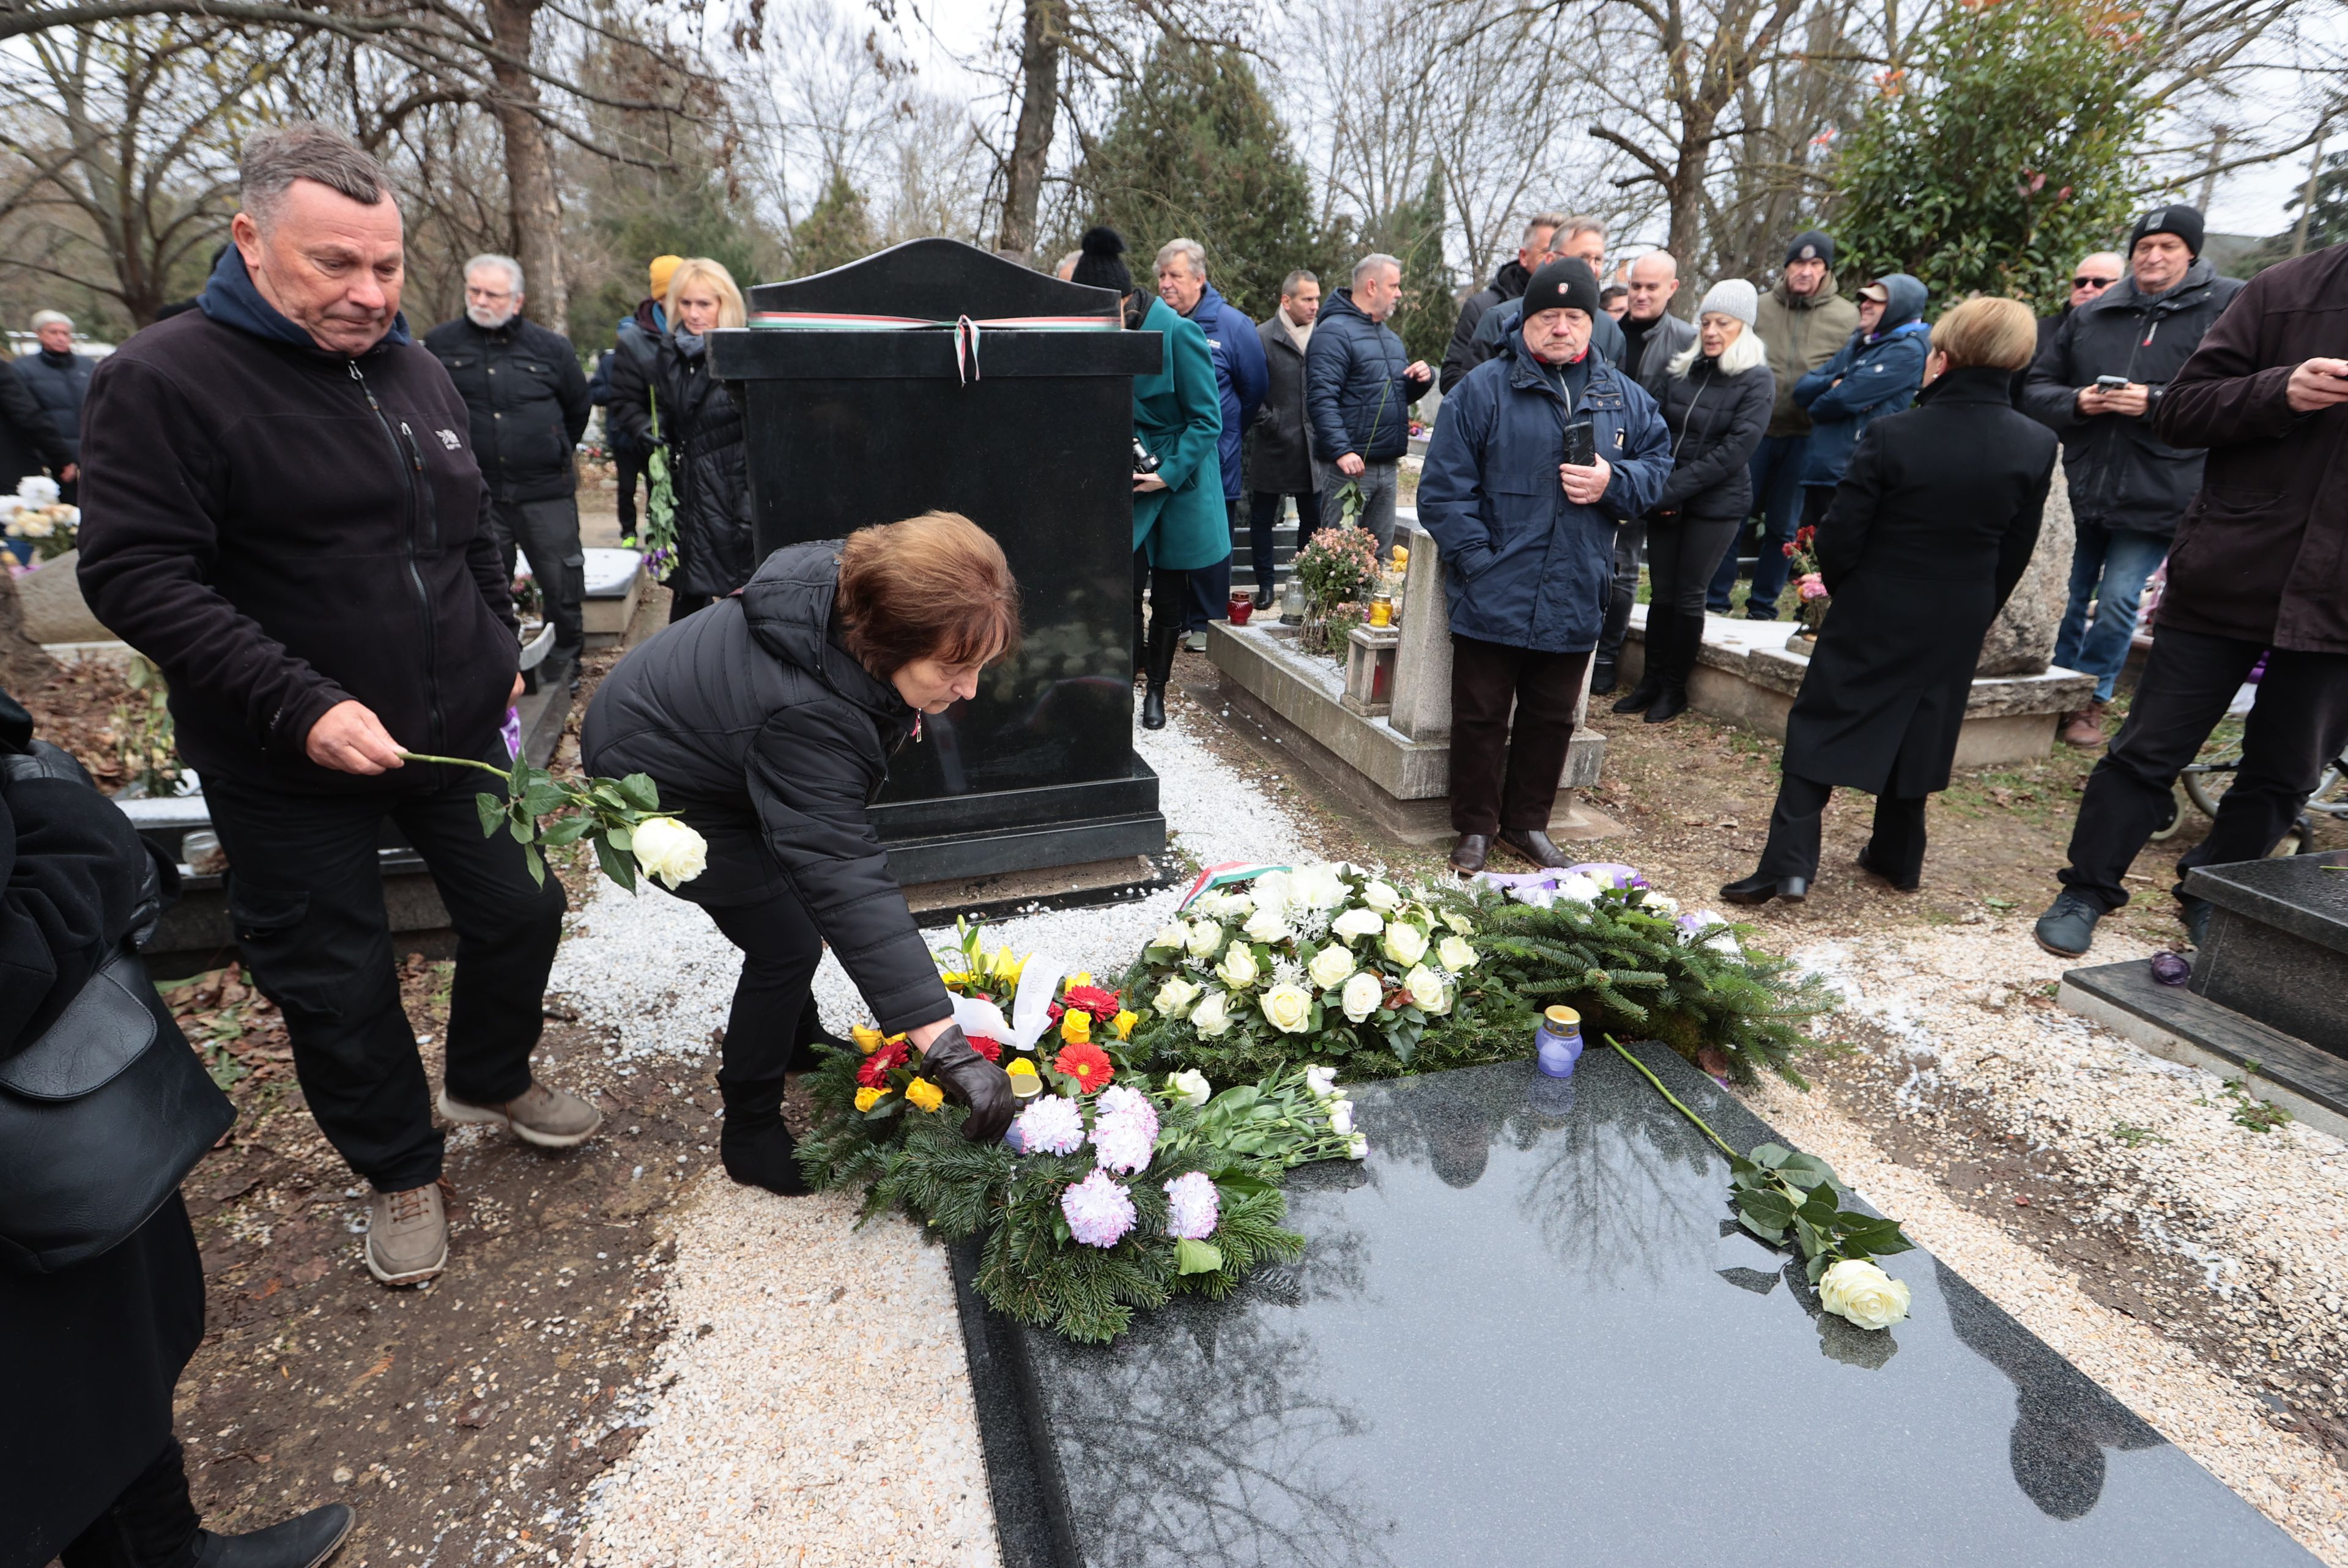 Galéria: ilyen lett Törőcsik András síremléke – sztárok emlékeztek az egykori csatárra